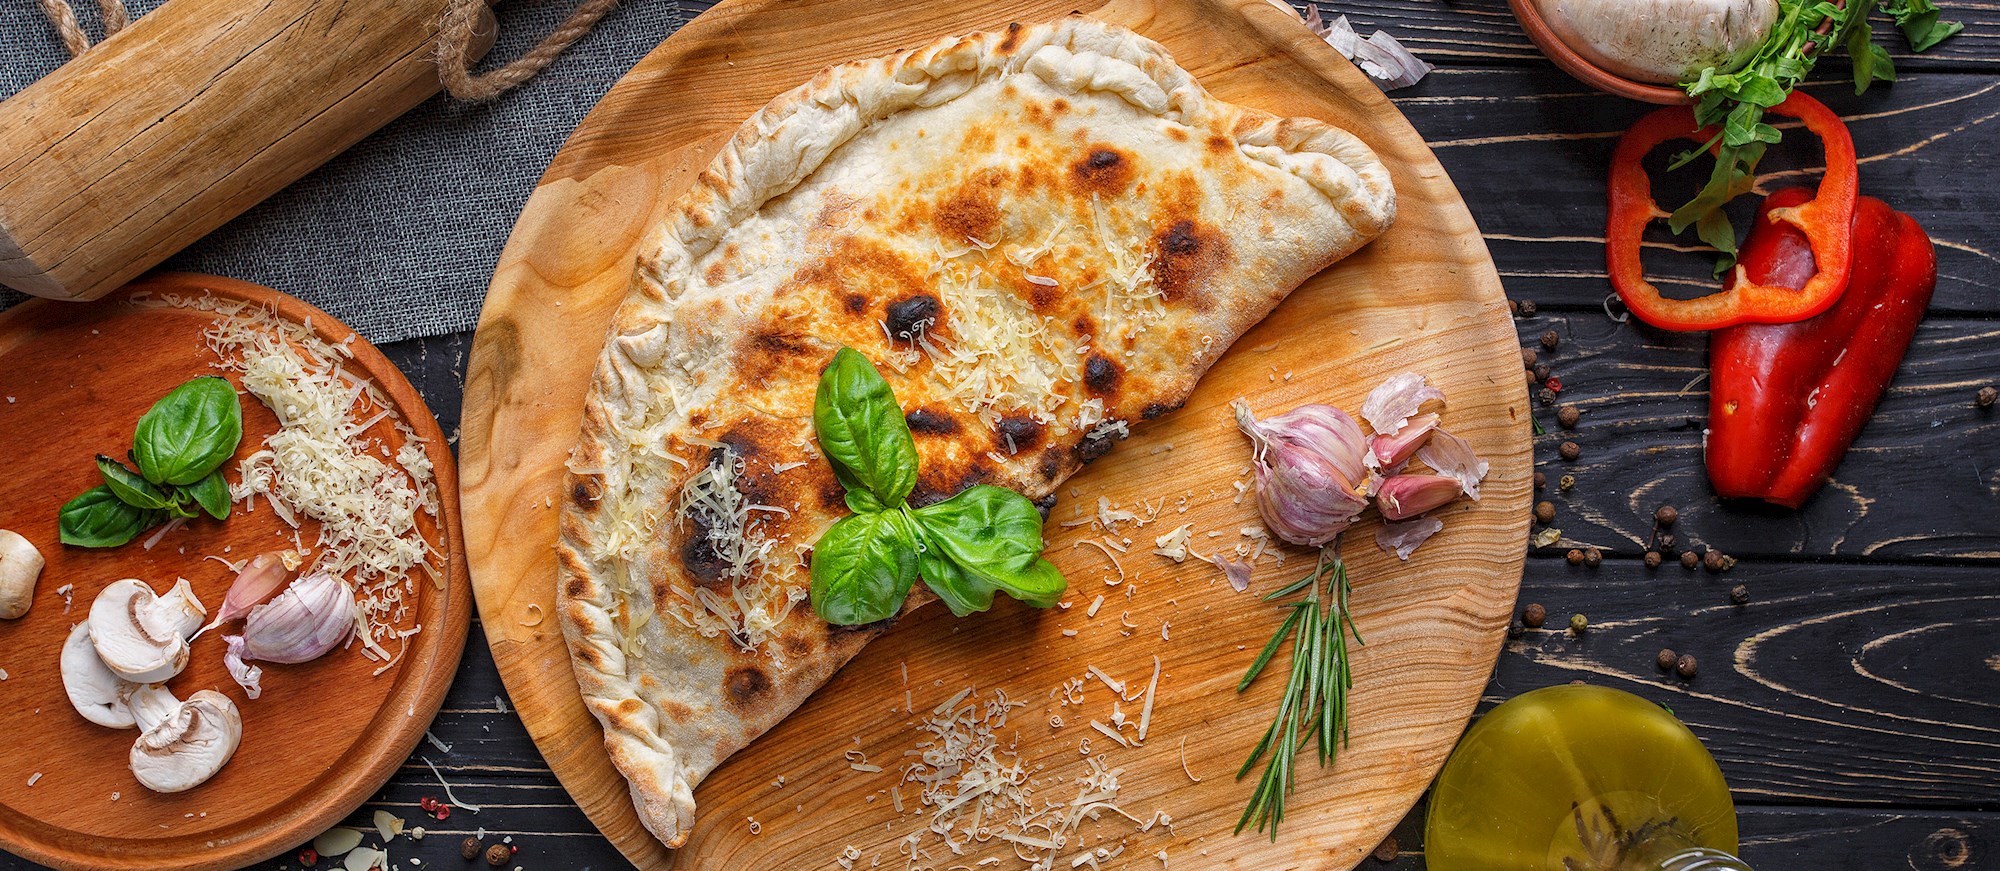 Calzone Pizza Authentic Recipe | TasteAtlas